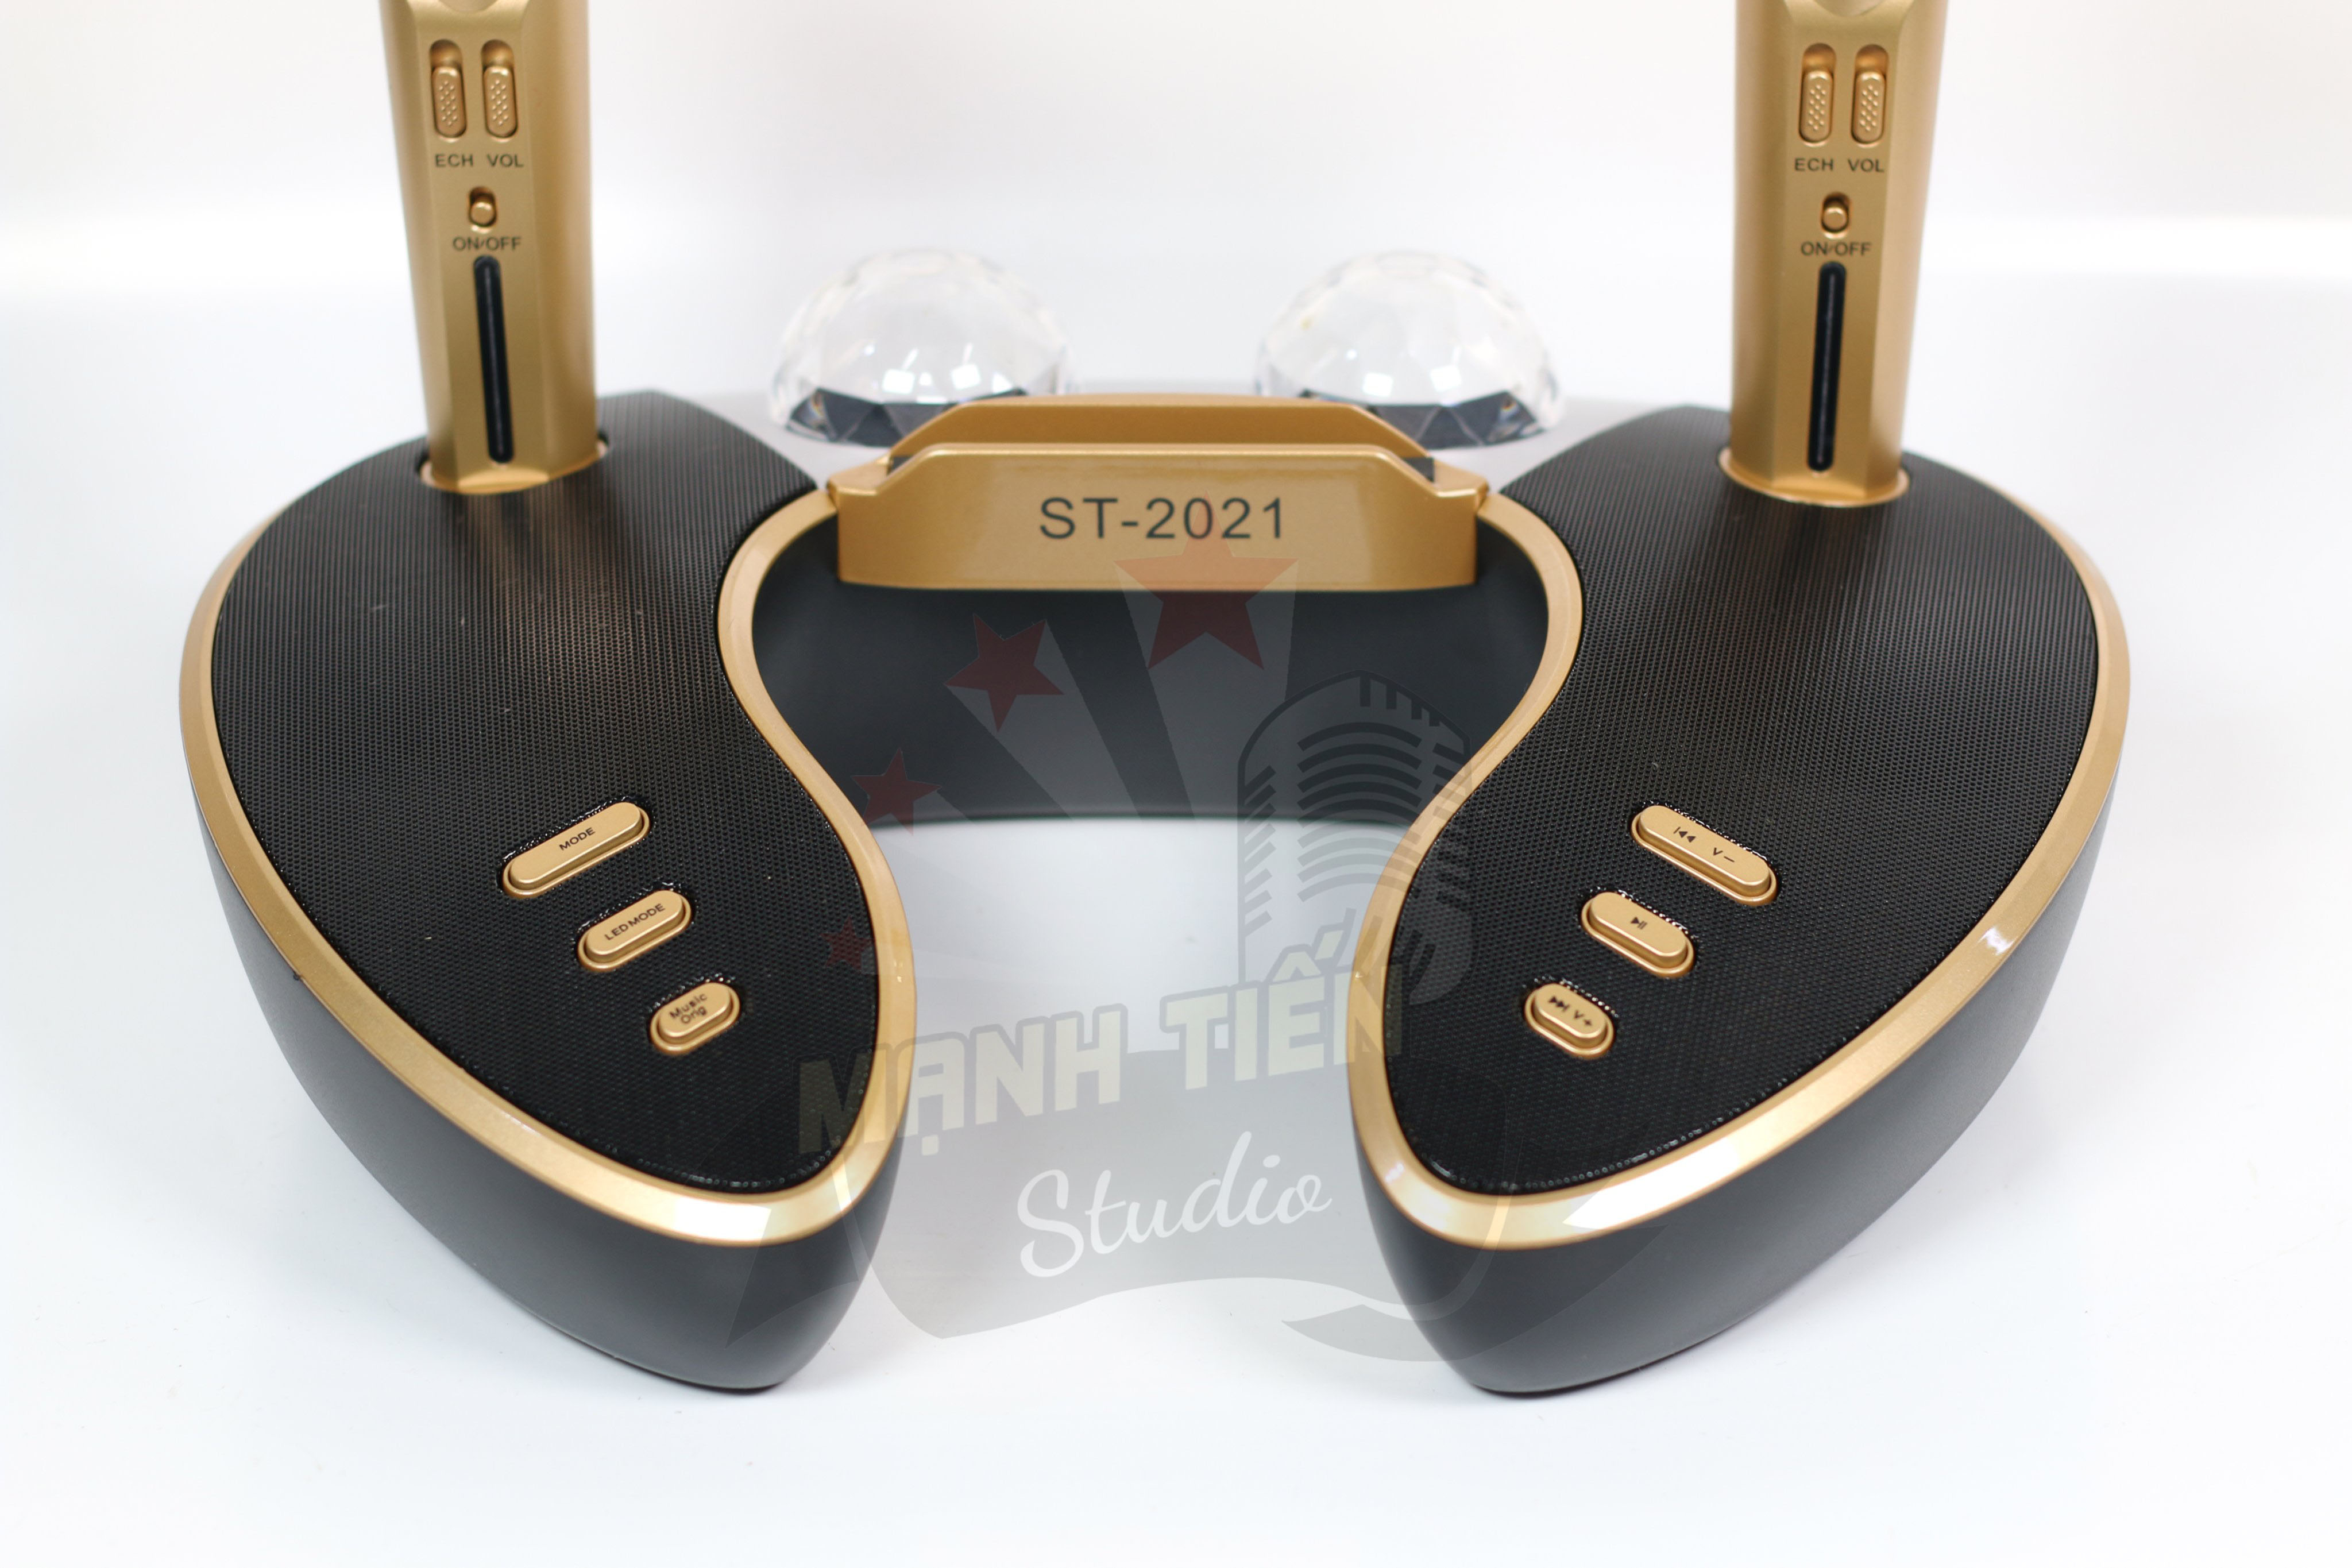 Loa bluetooth cao cấp ST 2021 - Dàn âm thanh karaoke mini kèm 2 đèn led - Nâng cấp từ ST 2020 - Tặng kèm 2 micro không dây - Loa karaoke bluetooth xách tay thời trang - Công nghệ mới thiết kế độc đáo - Bass cực chất - Giao màu ngẫu nhiên - Hàng nhập khẩu